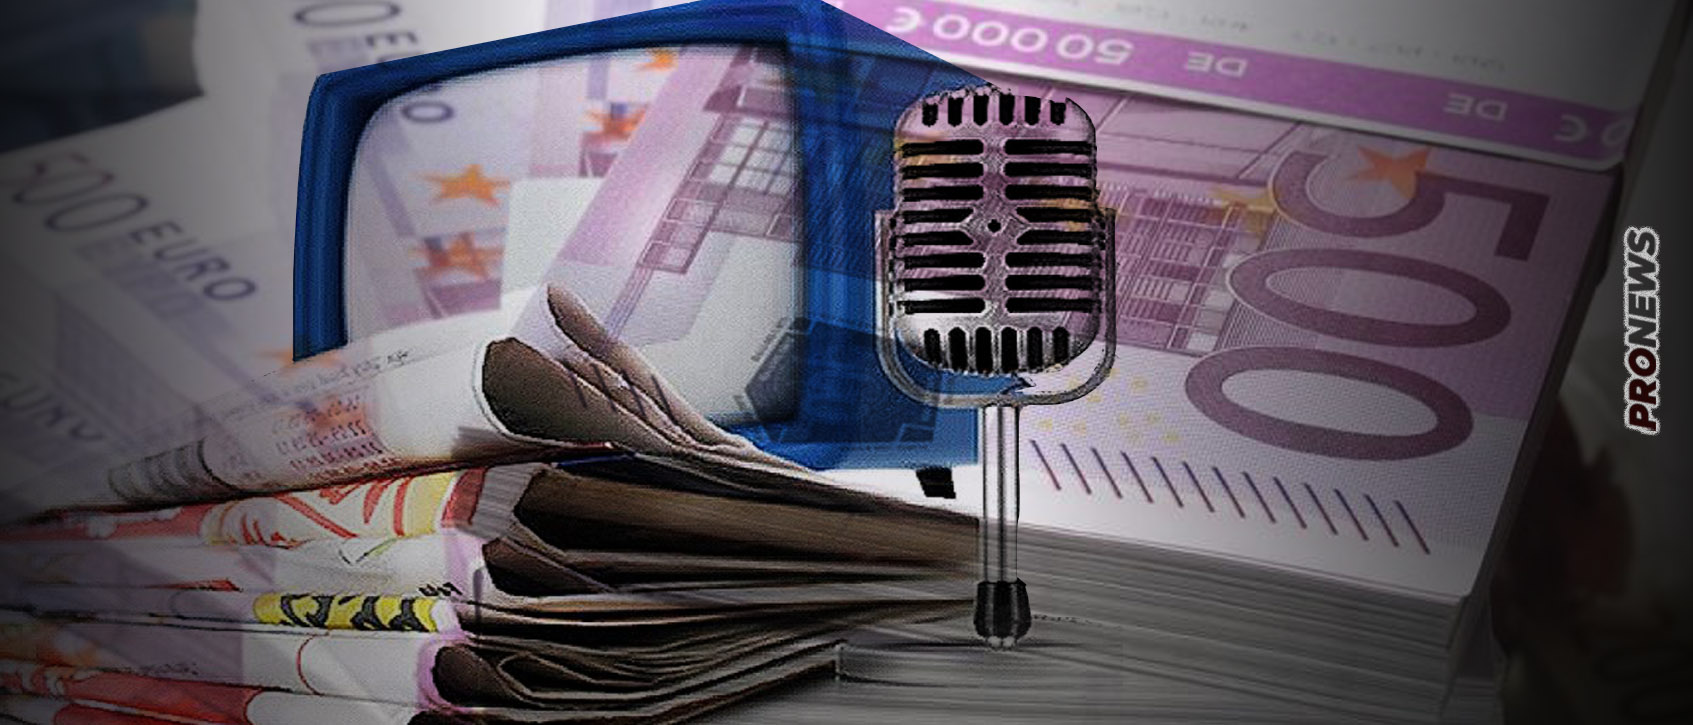 ΣΔΟΕ για «λίστα Πέτσα»: «Μοιράστηκαν εκατομμύρια ευρώ σε σάιτ φαντάσματα που απλώς στήθηκαν για να πάρουν τα λεφτά»!